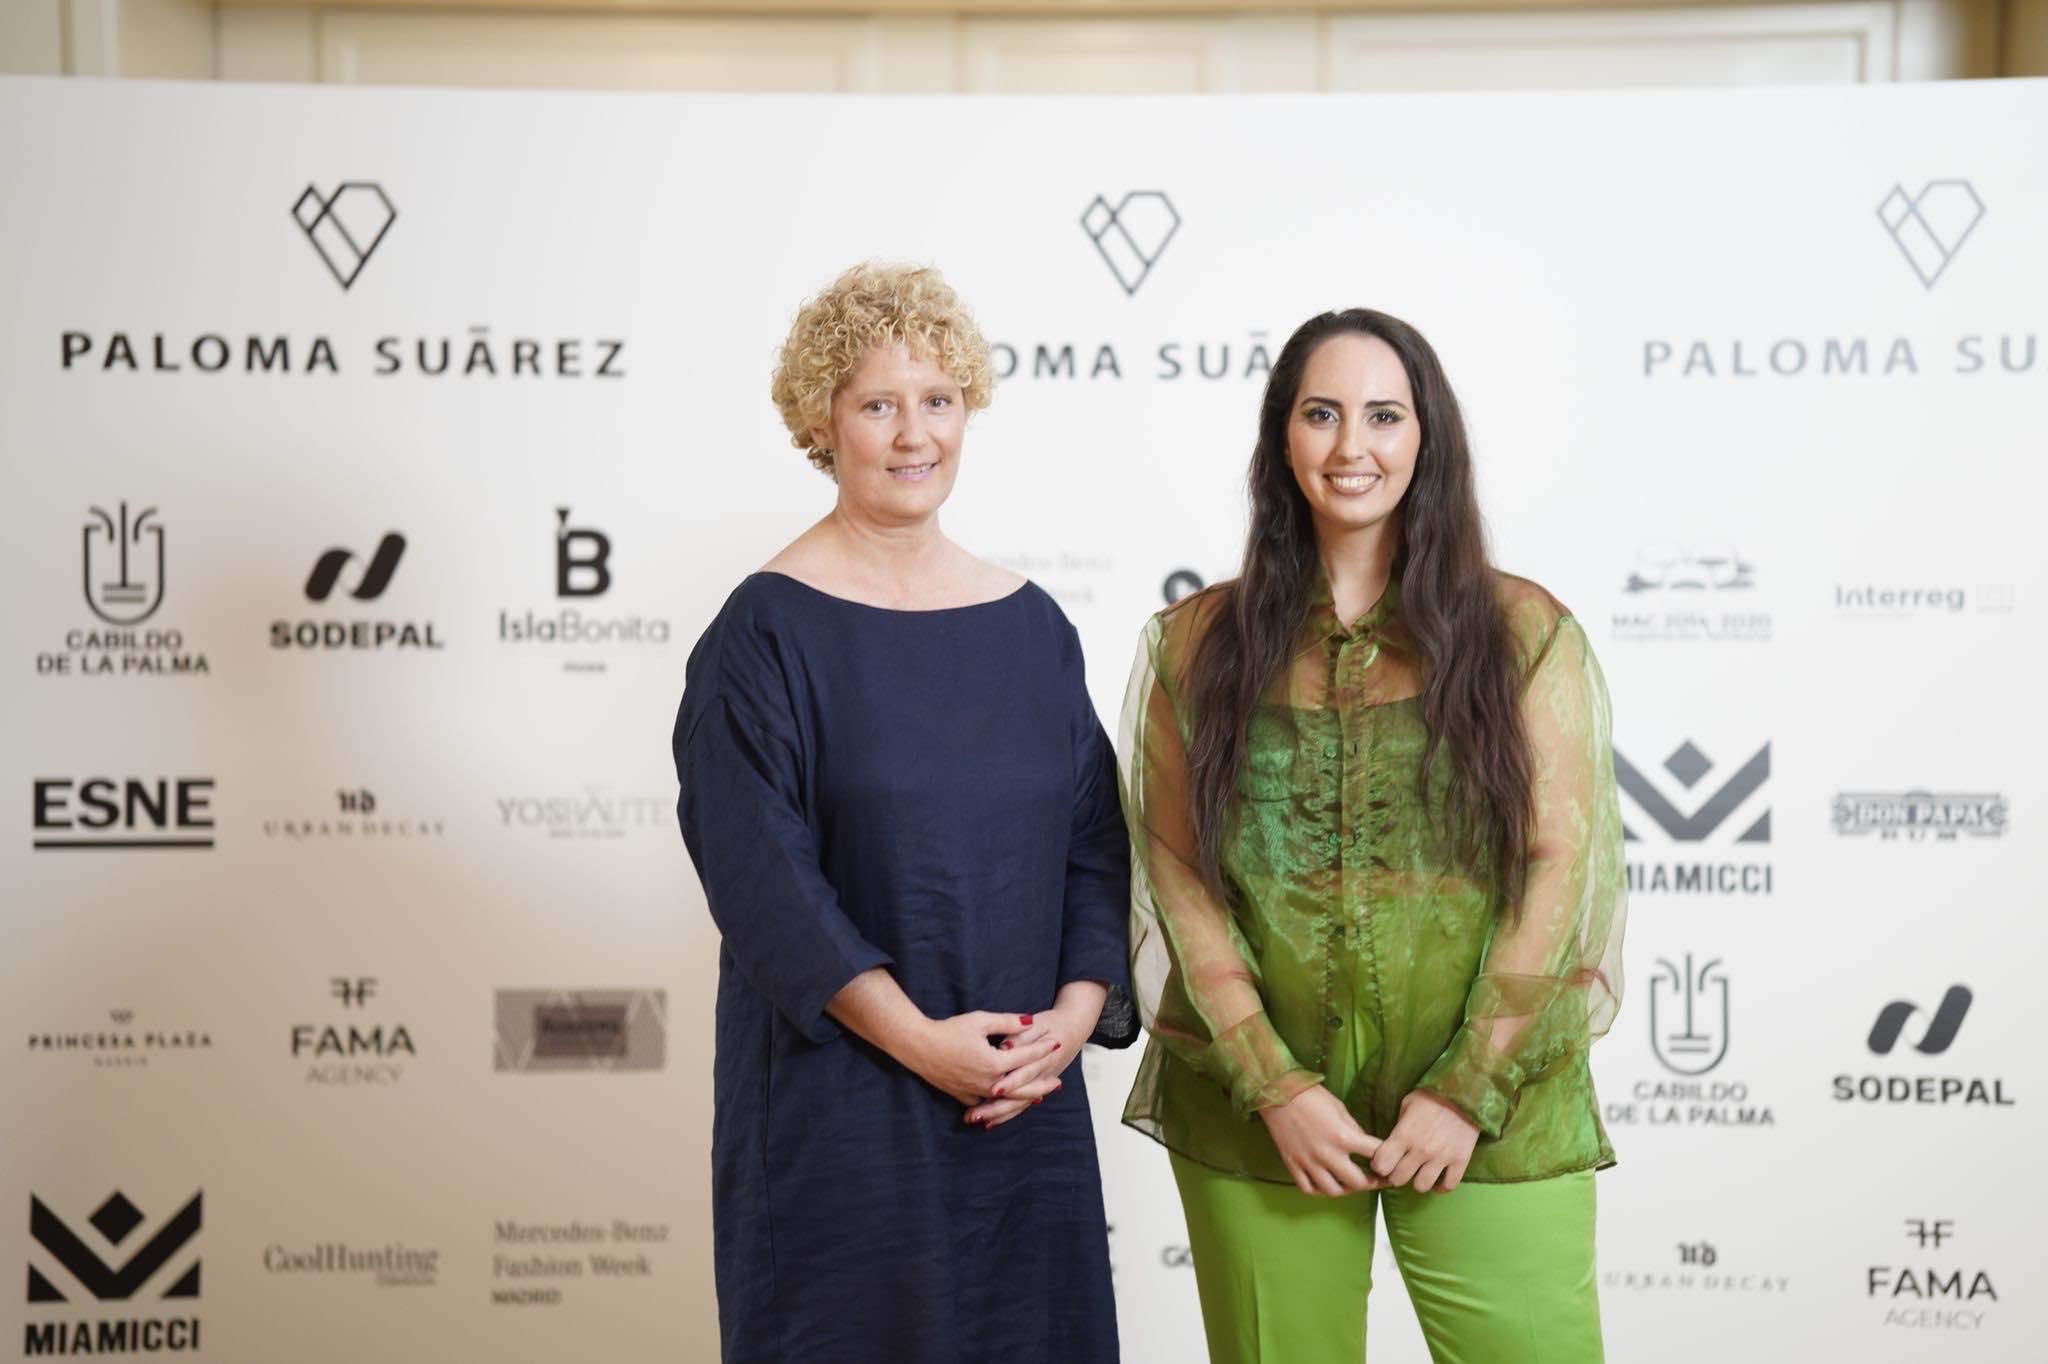 La diseñadora palmera Paloma Suárez deslumbra con su nueva colección en la Fashion Week Madrid, con el apoyo de Sodepal